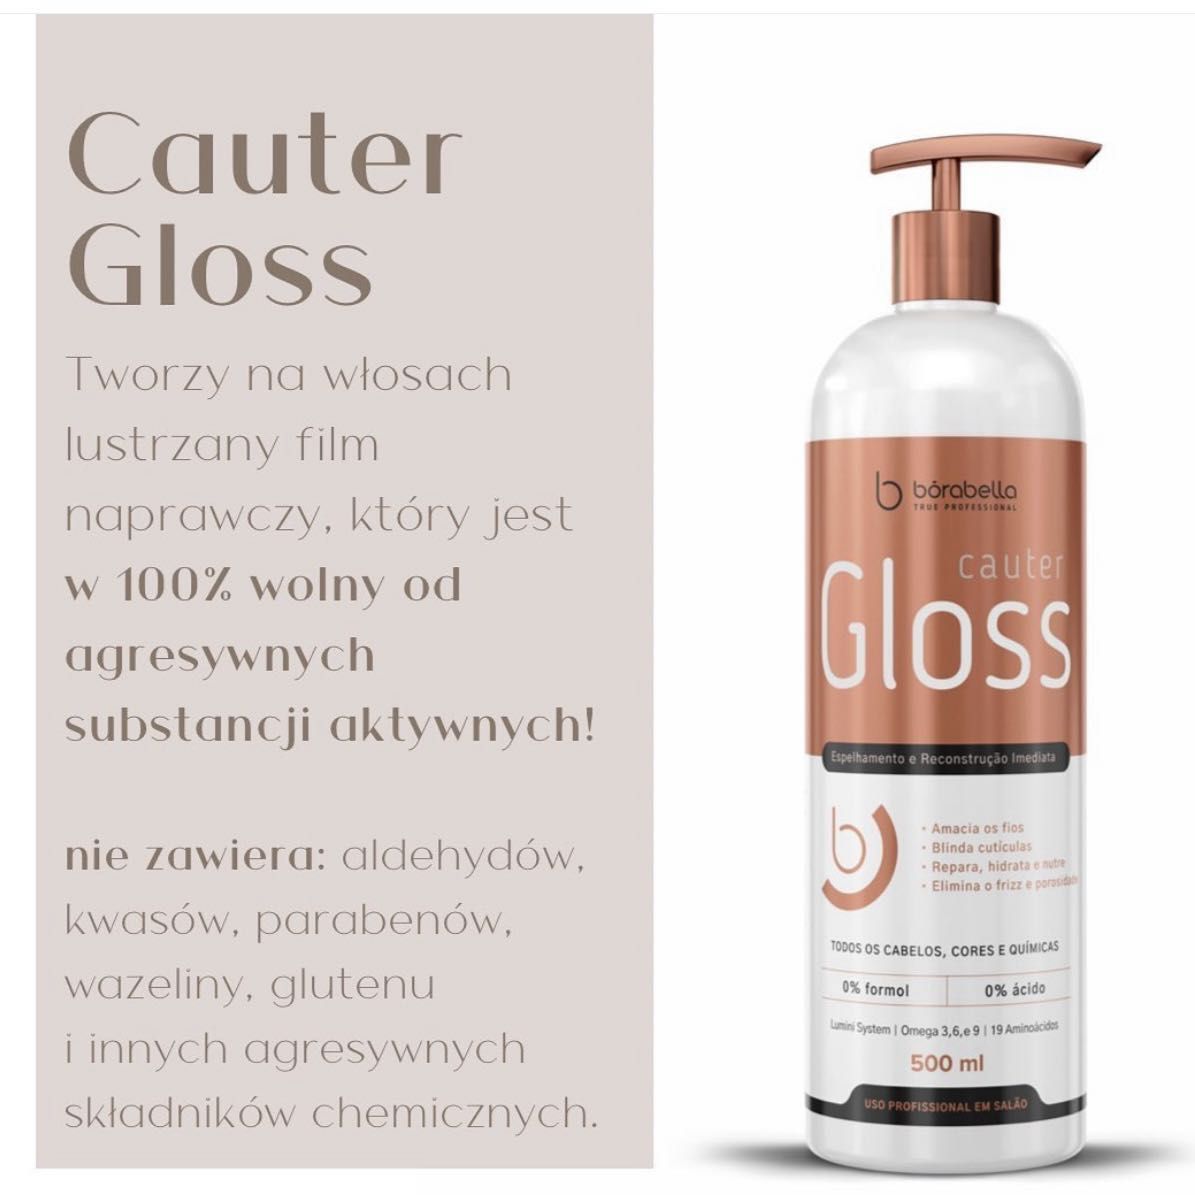 Portfolio usługi Cauter Gloss rewitalizacja i odbudowa włosów.